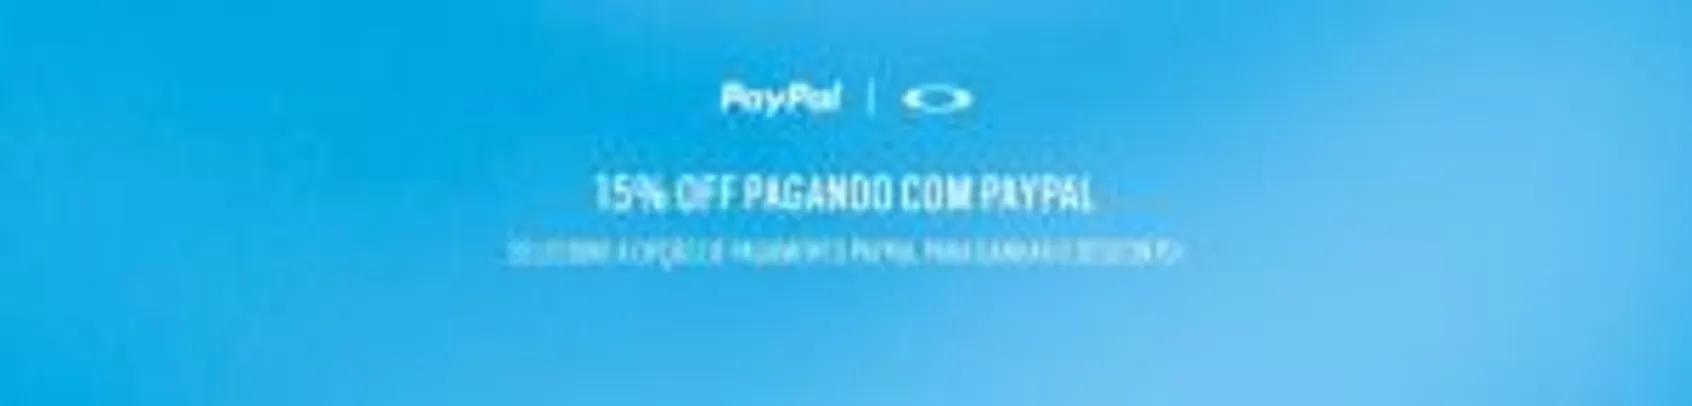 15% OFF em produtos Oakley pagando com Paypal